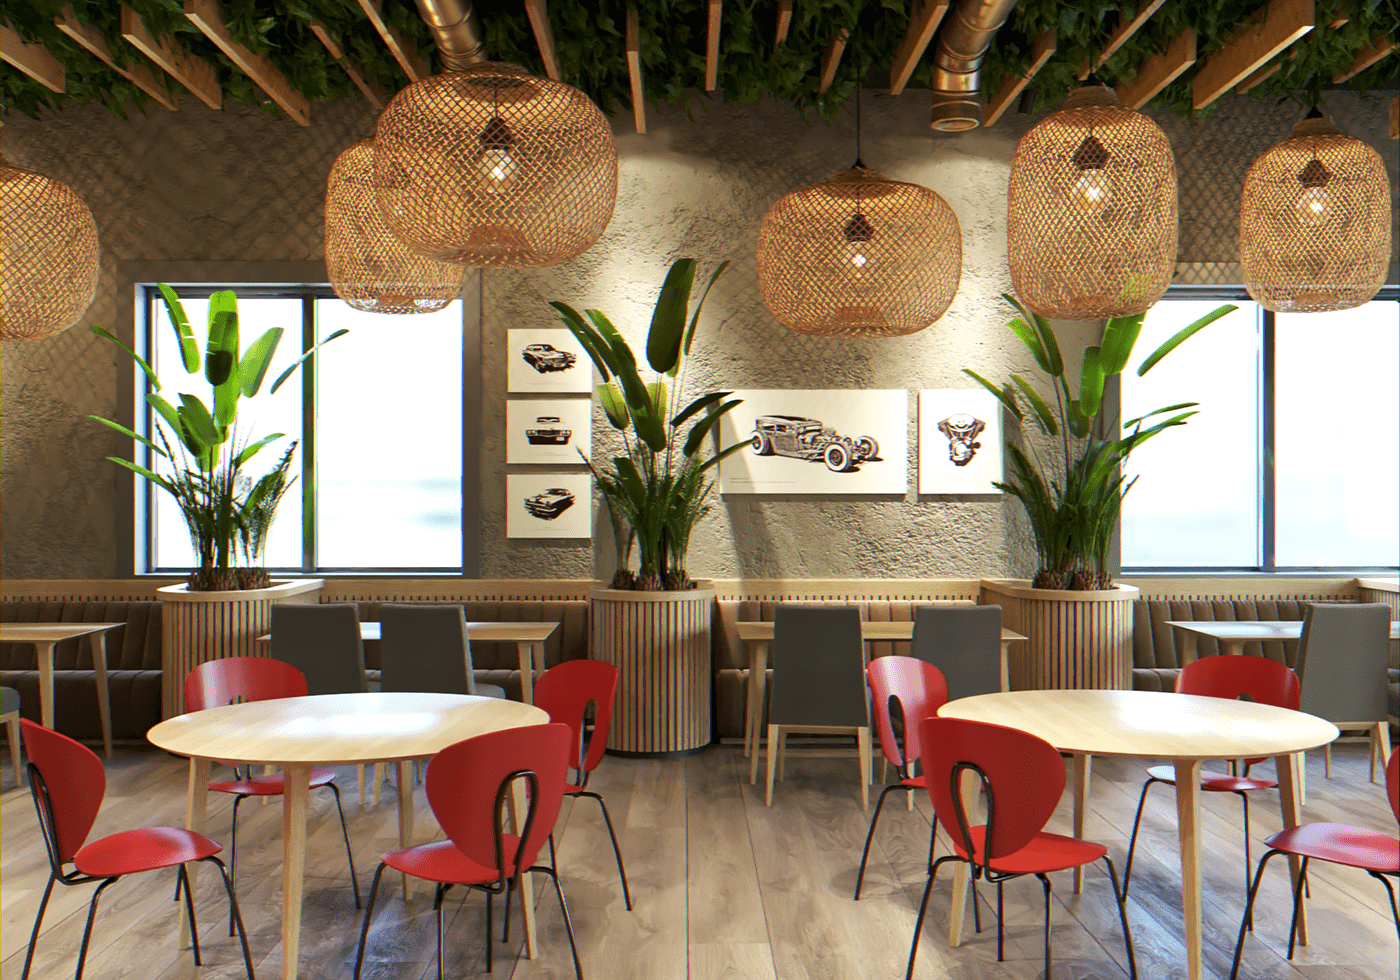 3DDesign cafe coffeeshop design Interior restaurant